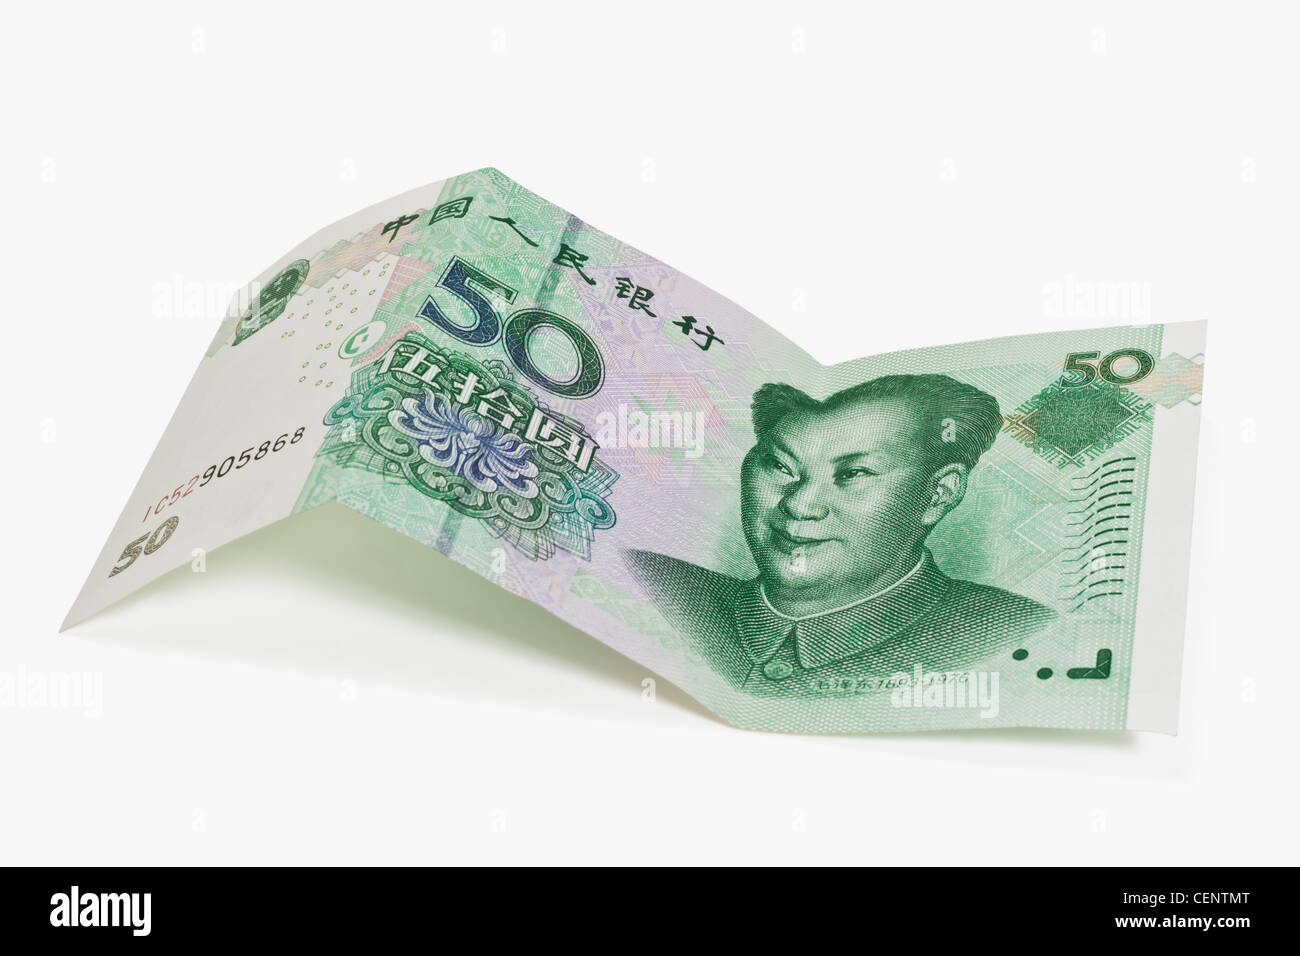 50 yuan bill con il ritratto di Mao Zedong. Il renminbi, la valuta cinese, è stato introdotto nel 1949. Foto Stock